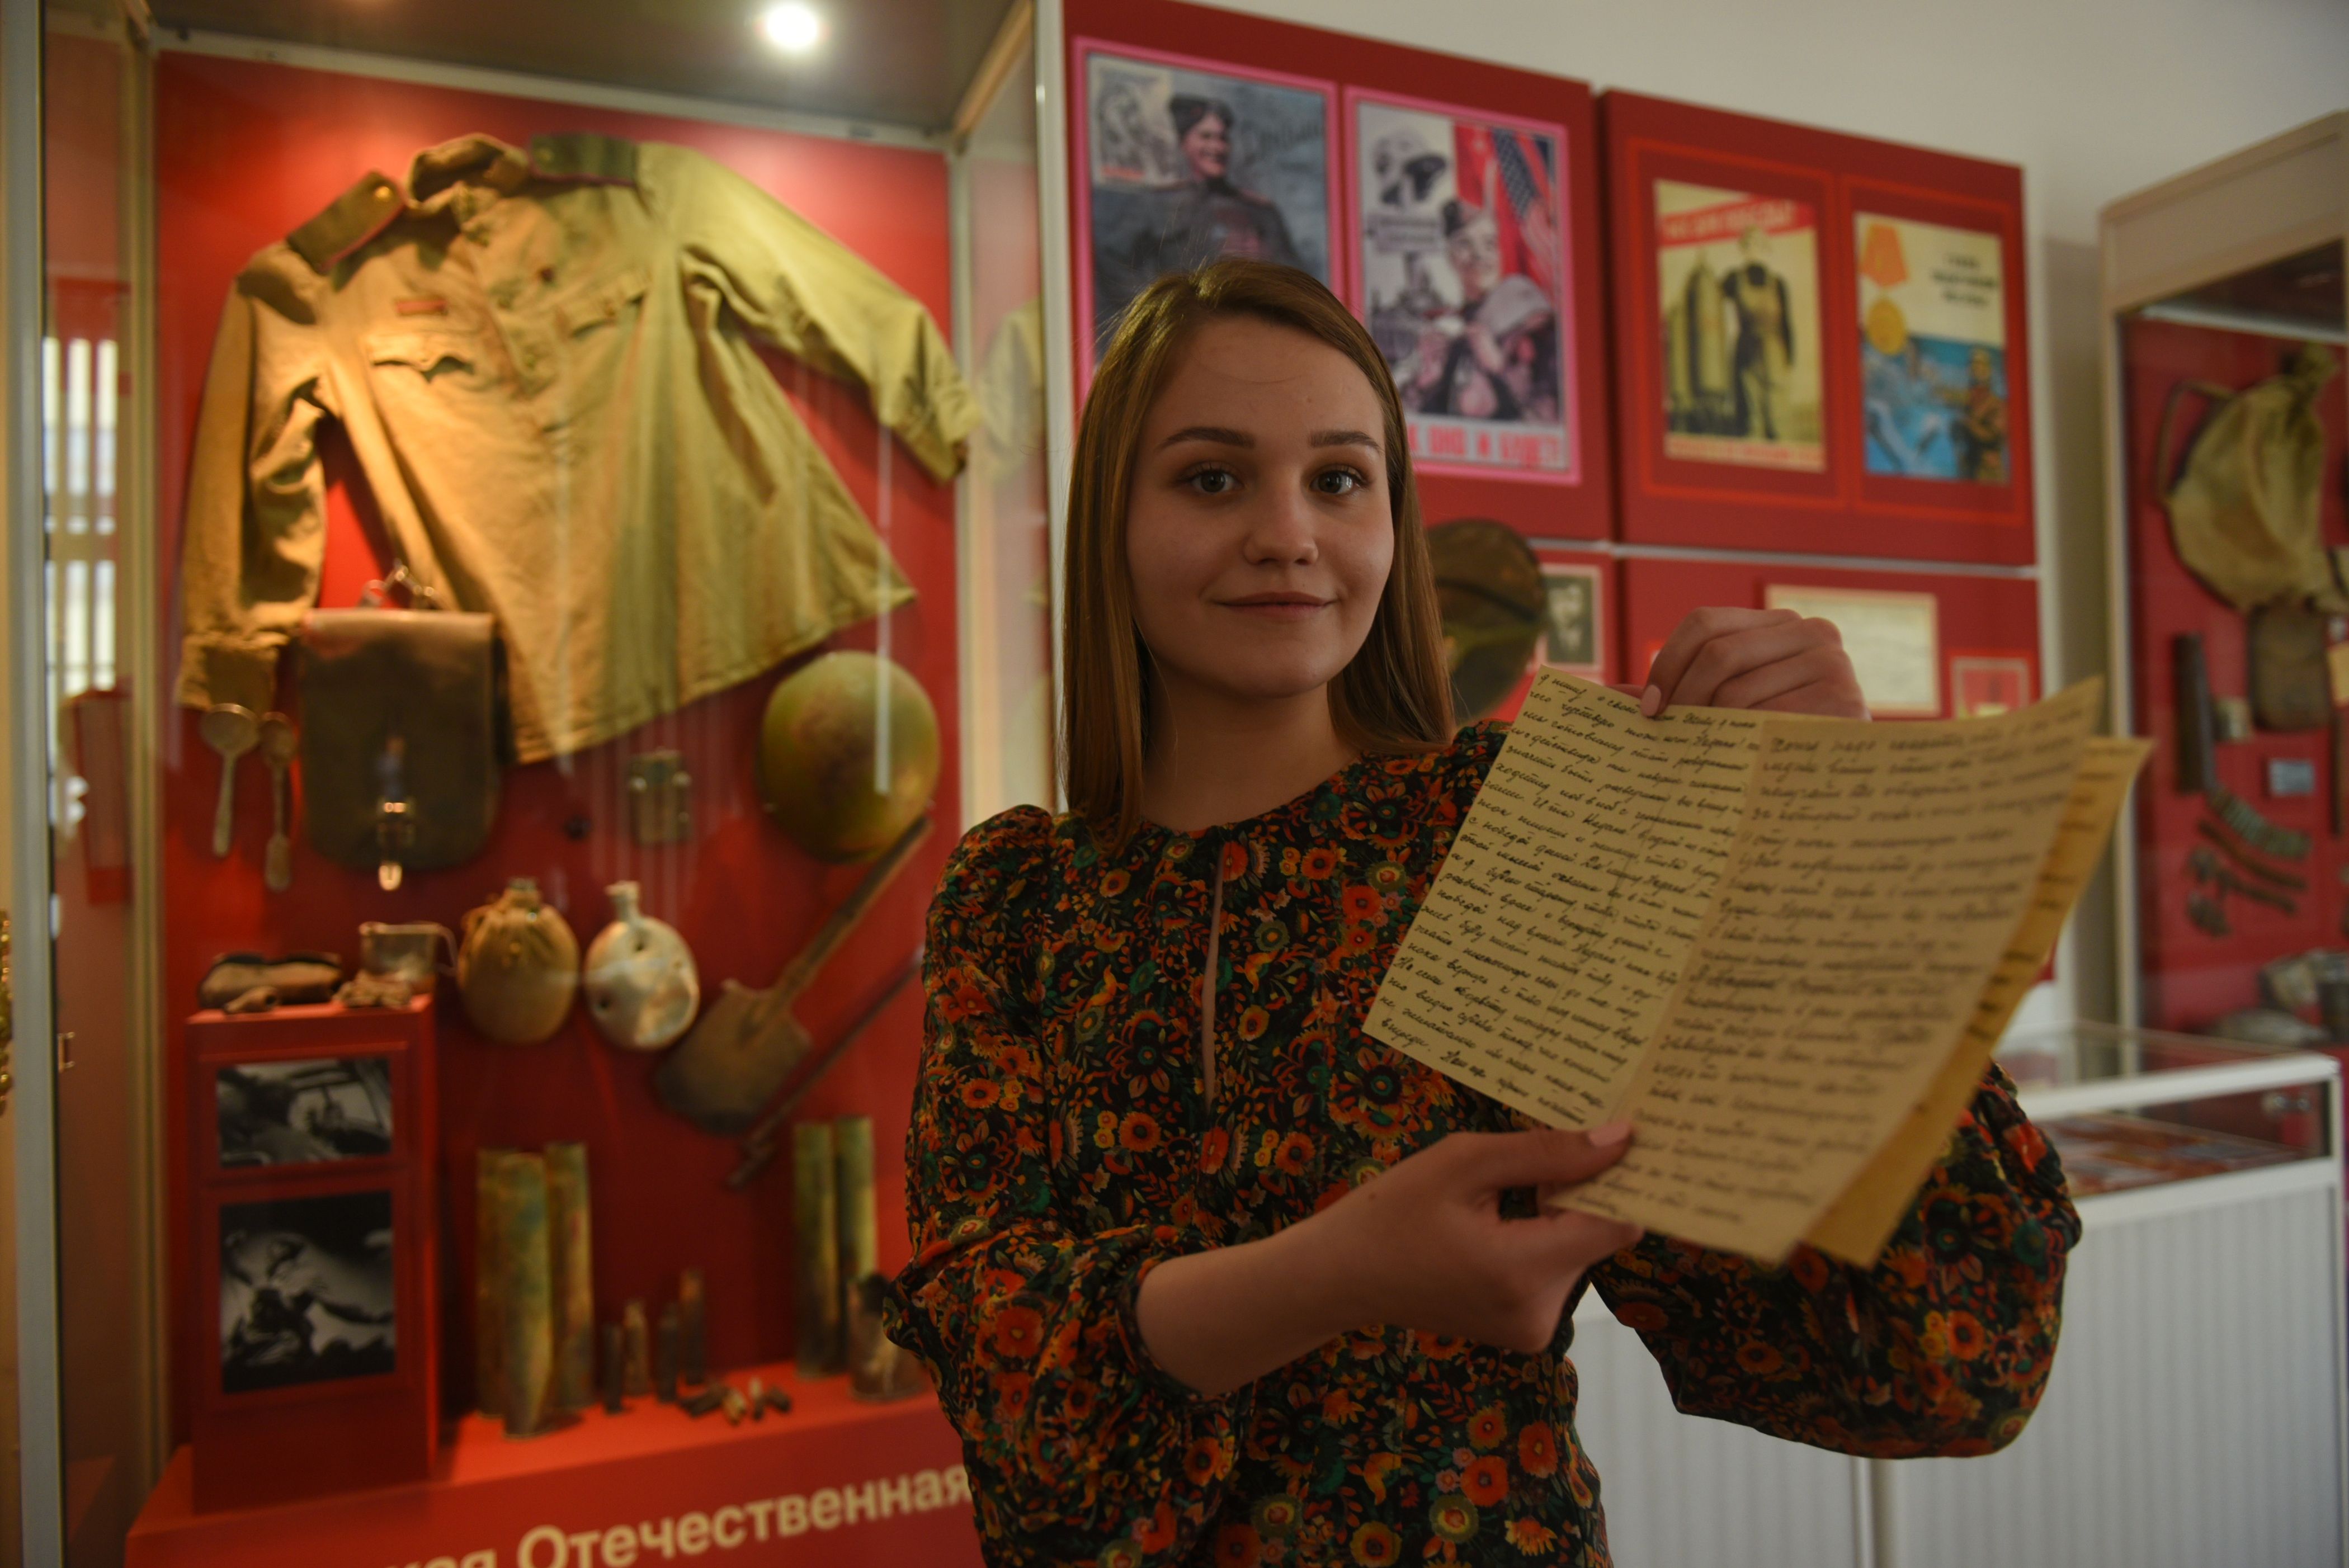 Школьники проявили интерес к «Историческим субботам». Фото: архив, «Вечерняя Москва»